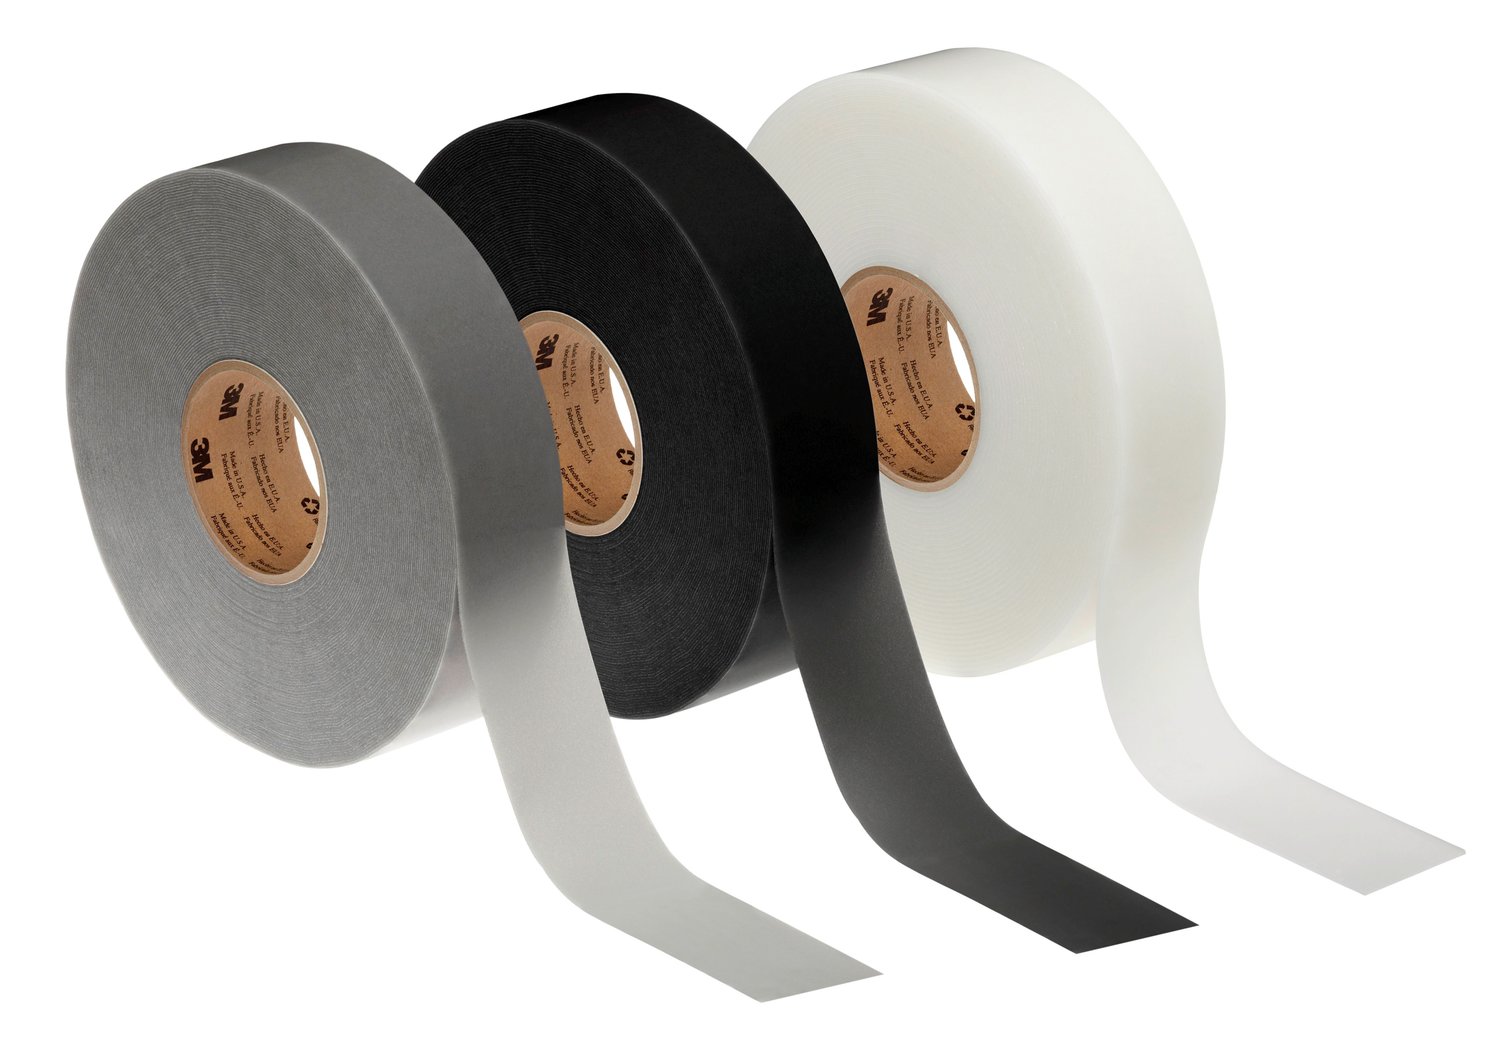 7000049739 - 3M Extreme Sealing Tape Demo Strips, White/Gray/Black, 10 Strips per
Bag